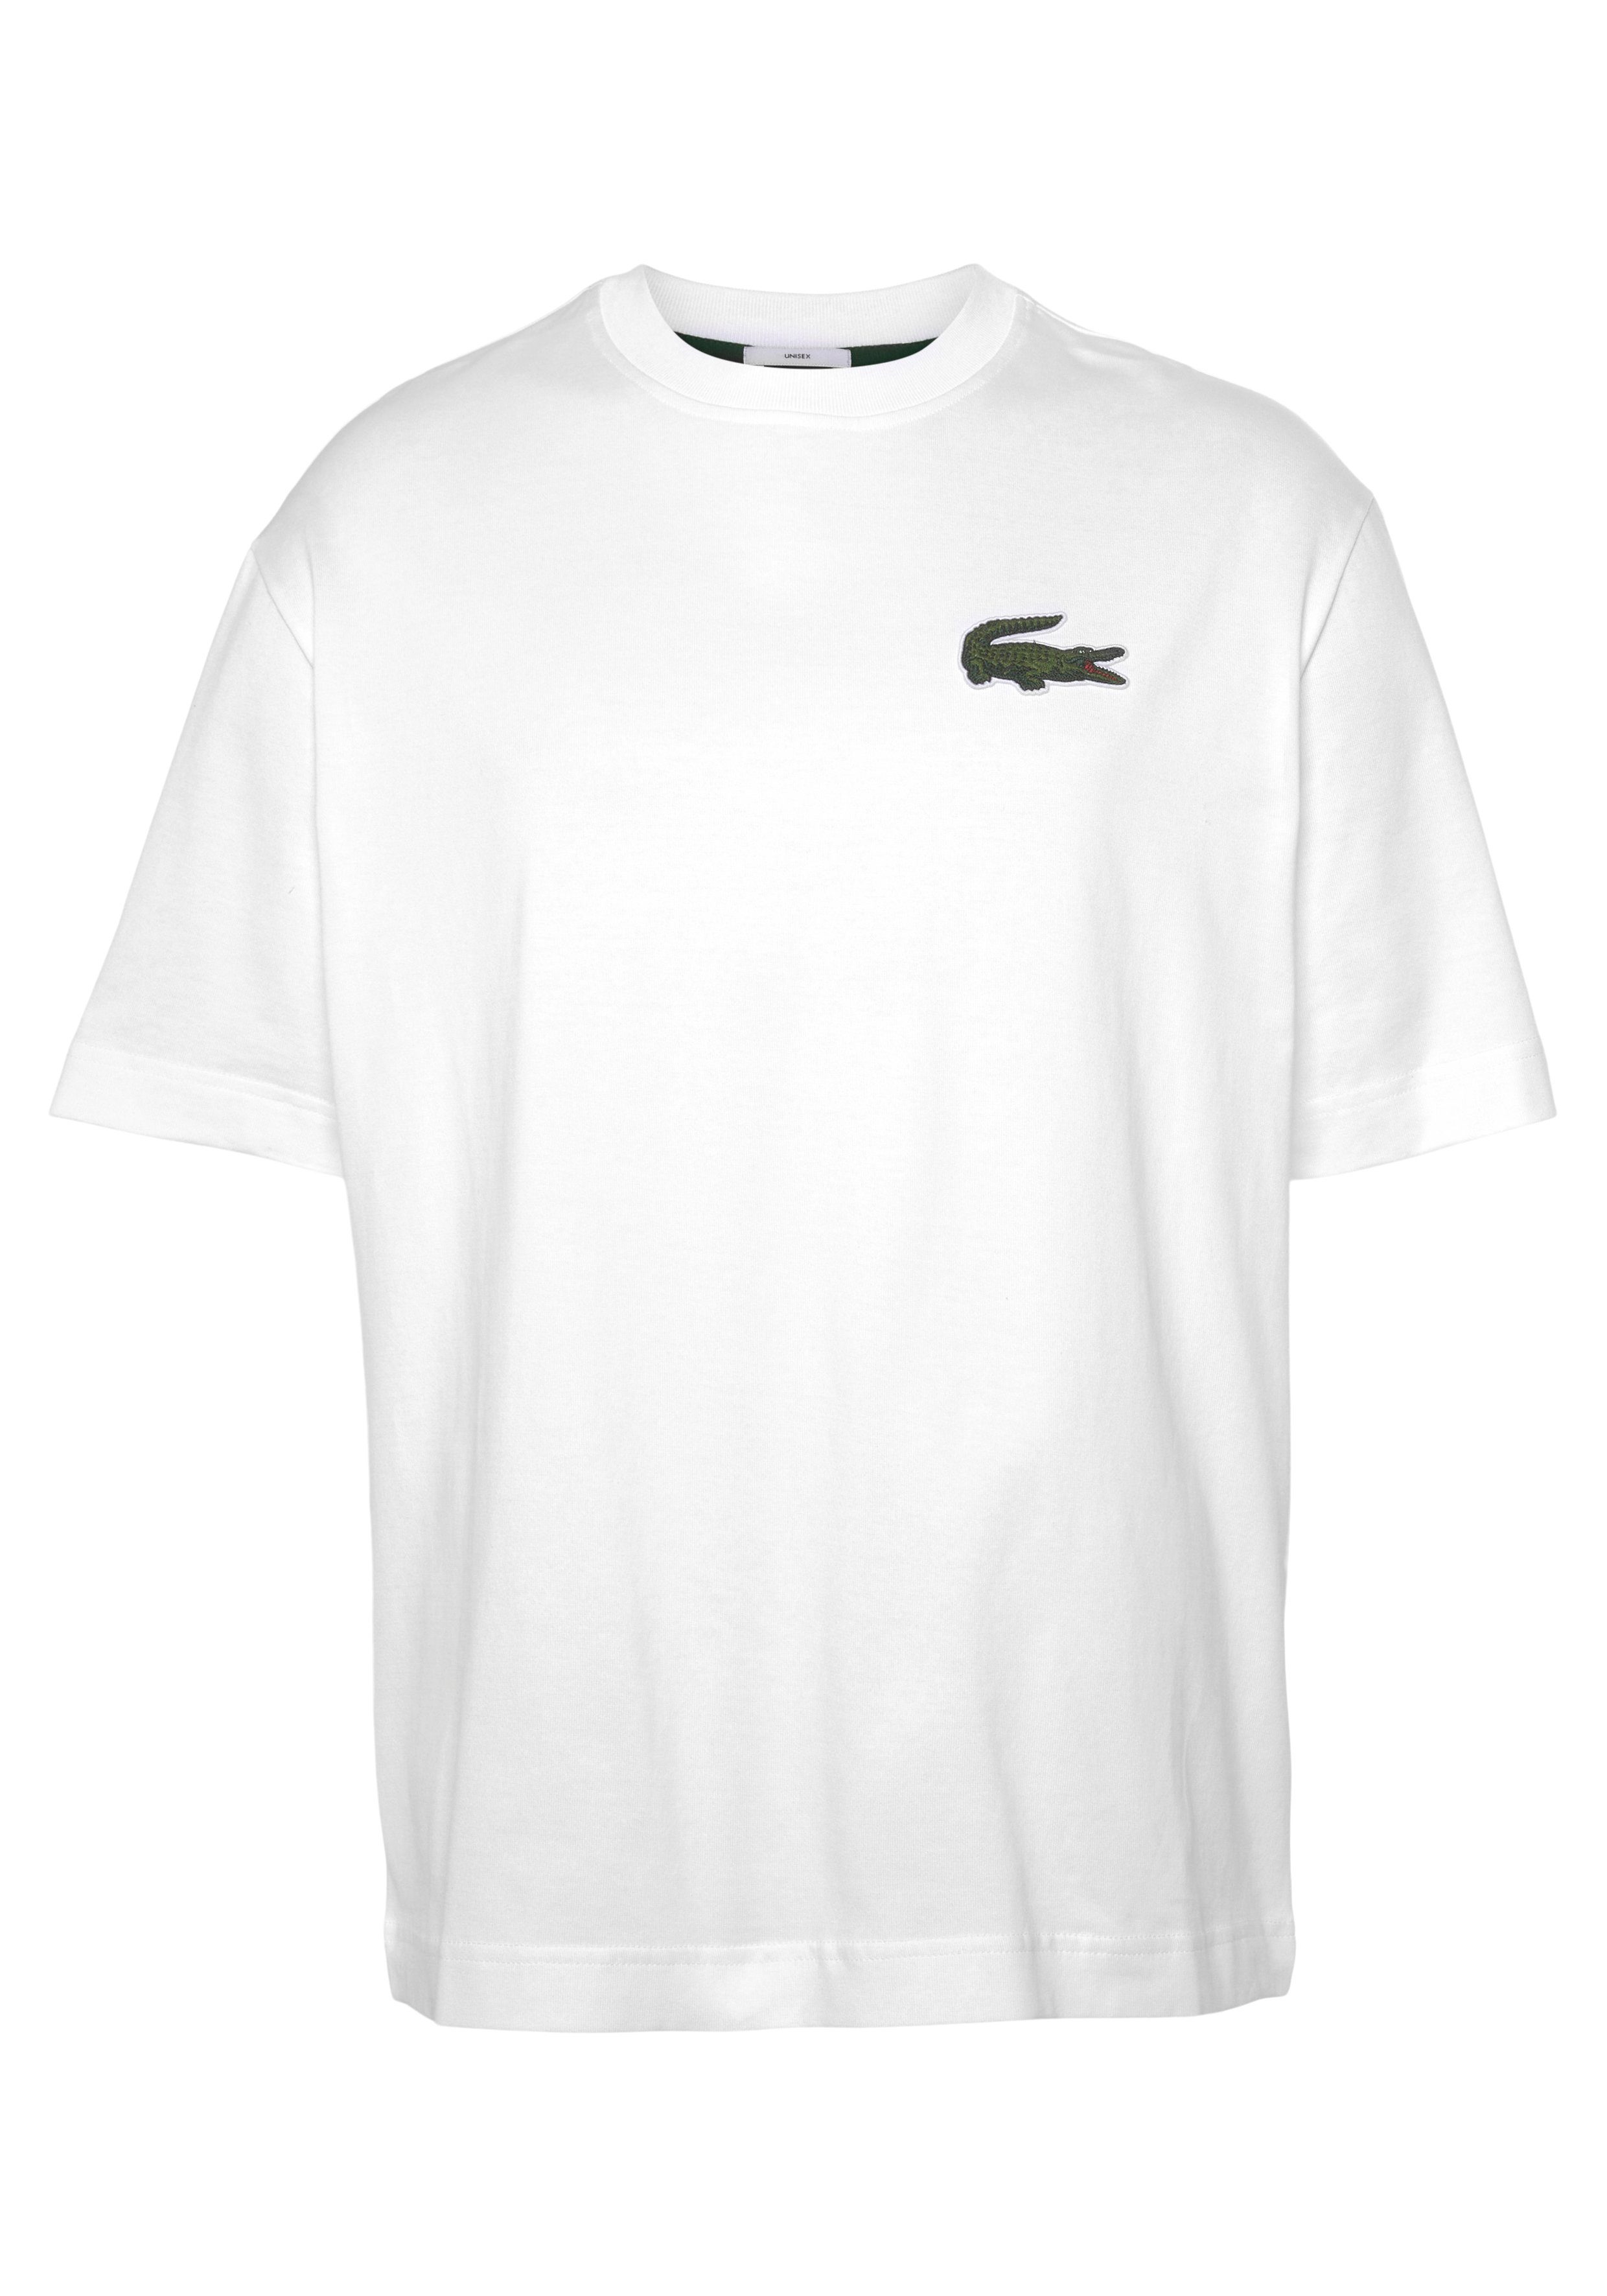 Rundhalsausschnitt Lacoste white T-Shirt mit